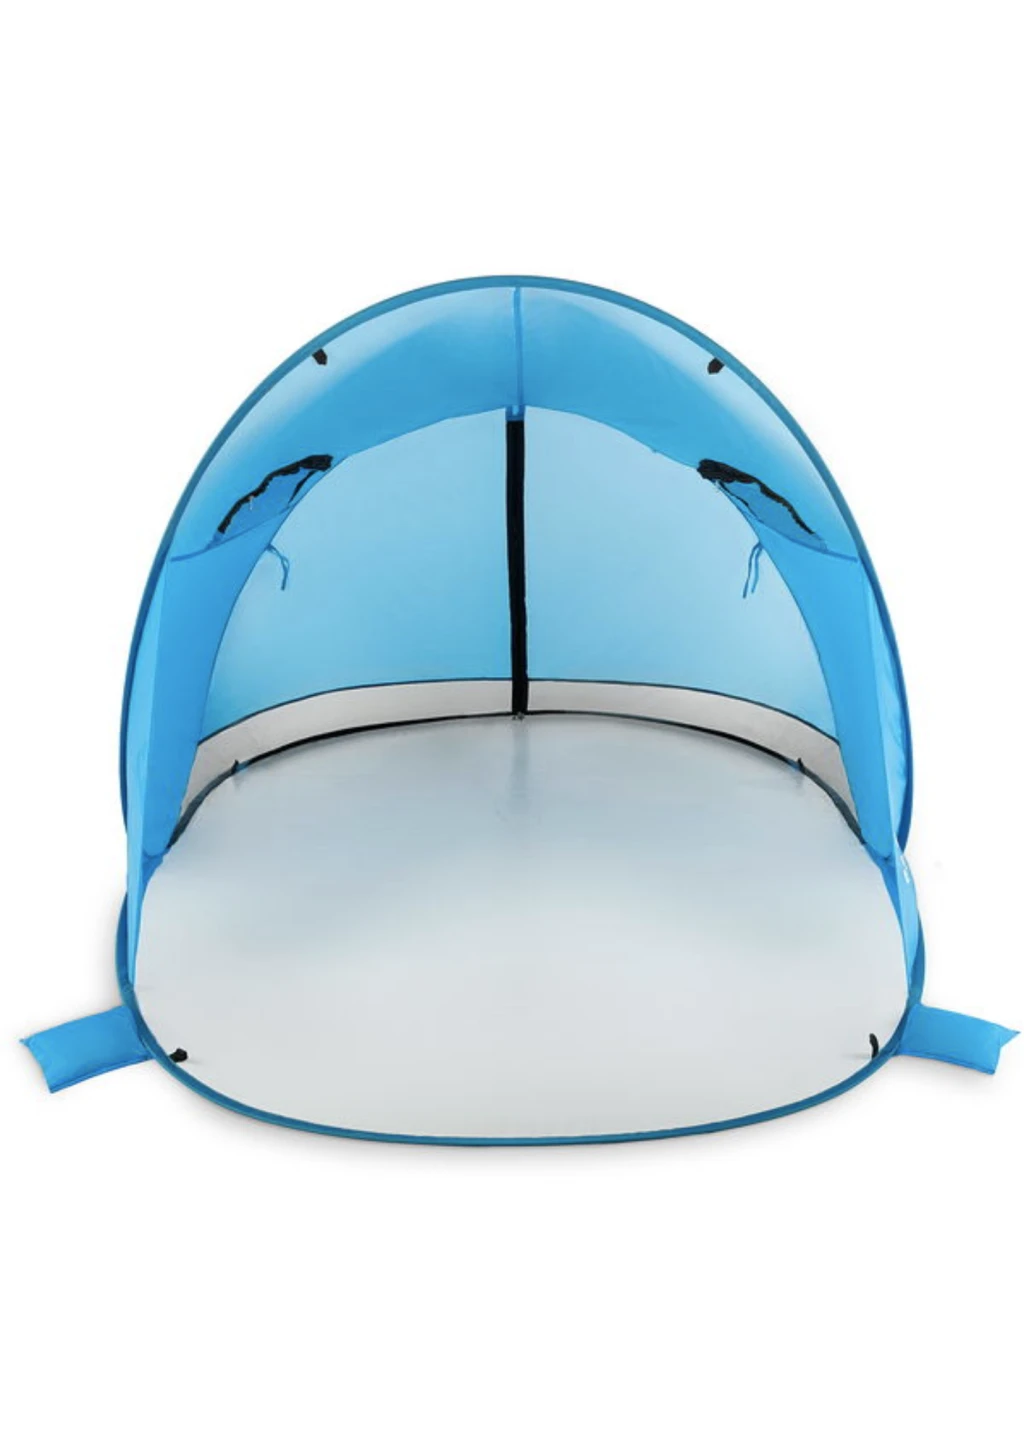 Самораскладная палатка-тент Outtec с окошком XXL голубой